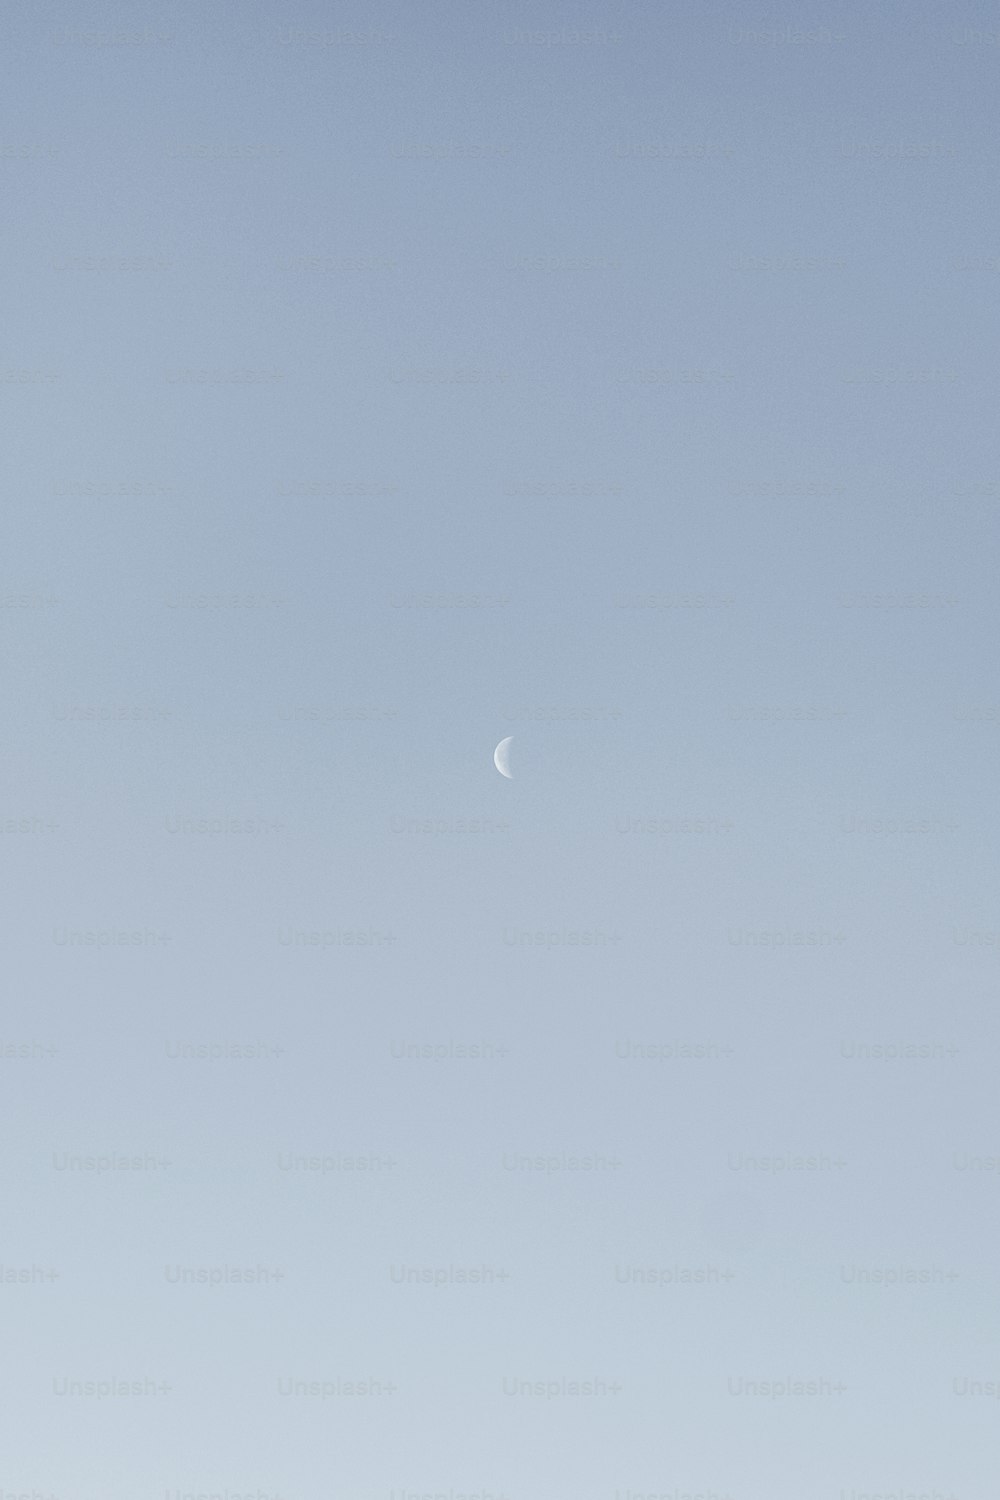 un avión volando en el cielo con una media luna en la distancia